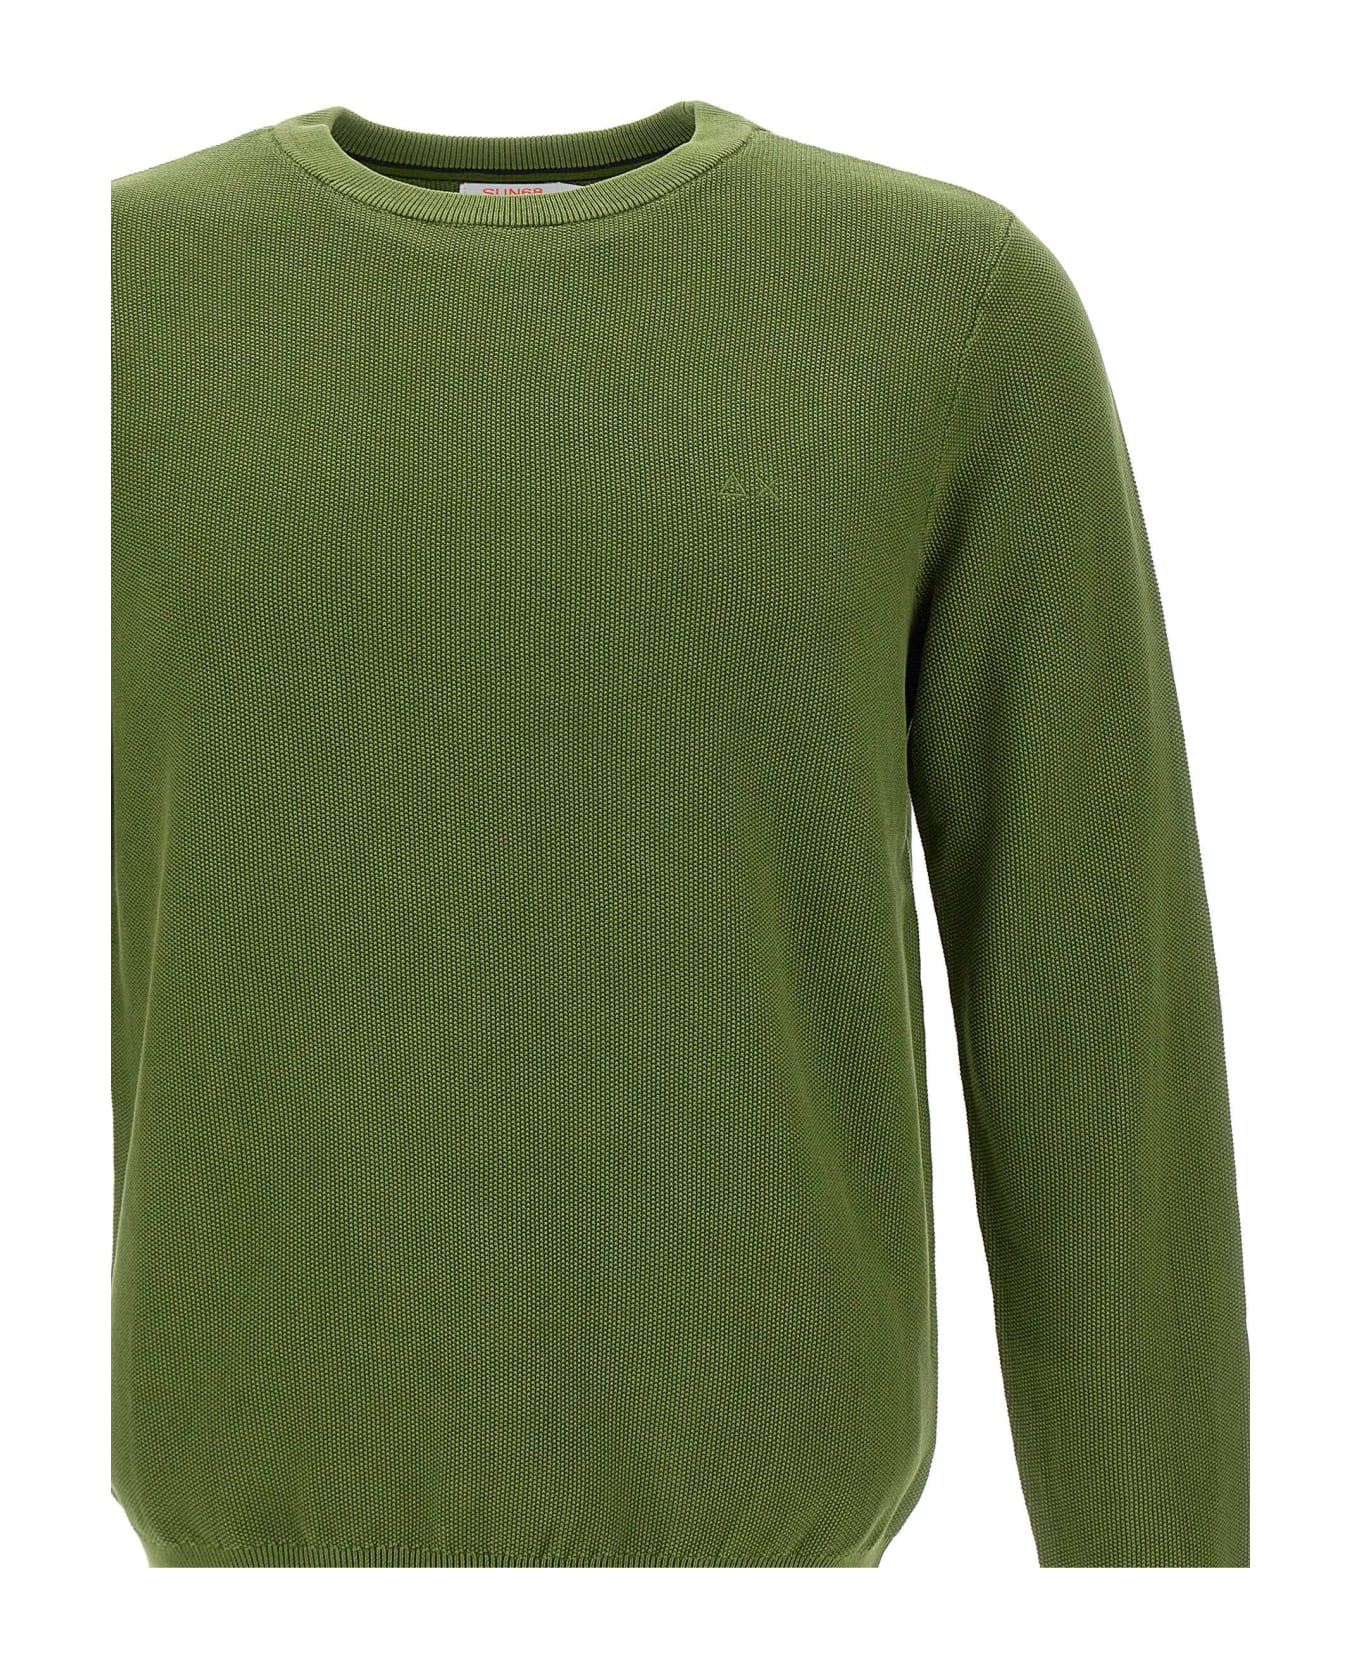 Sun 68 "round Vintage" Sweater Cotton - GREEN